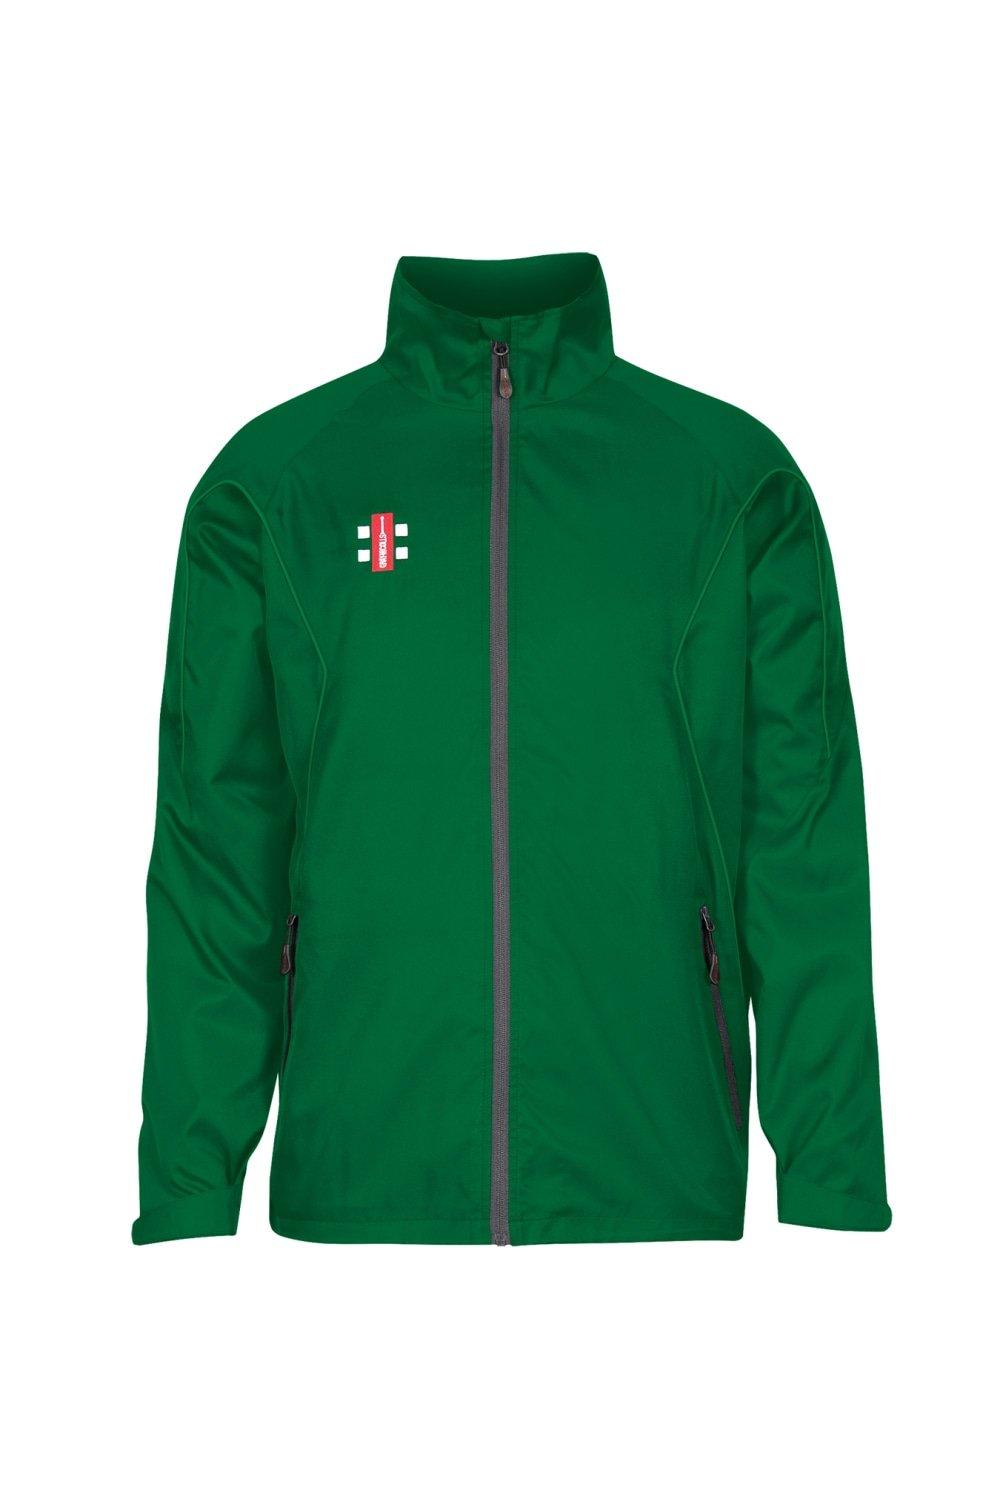 Тренировочная куртка Storm Gray-Nicolls, зеленый топ inentity 42 44 размер